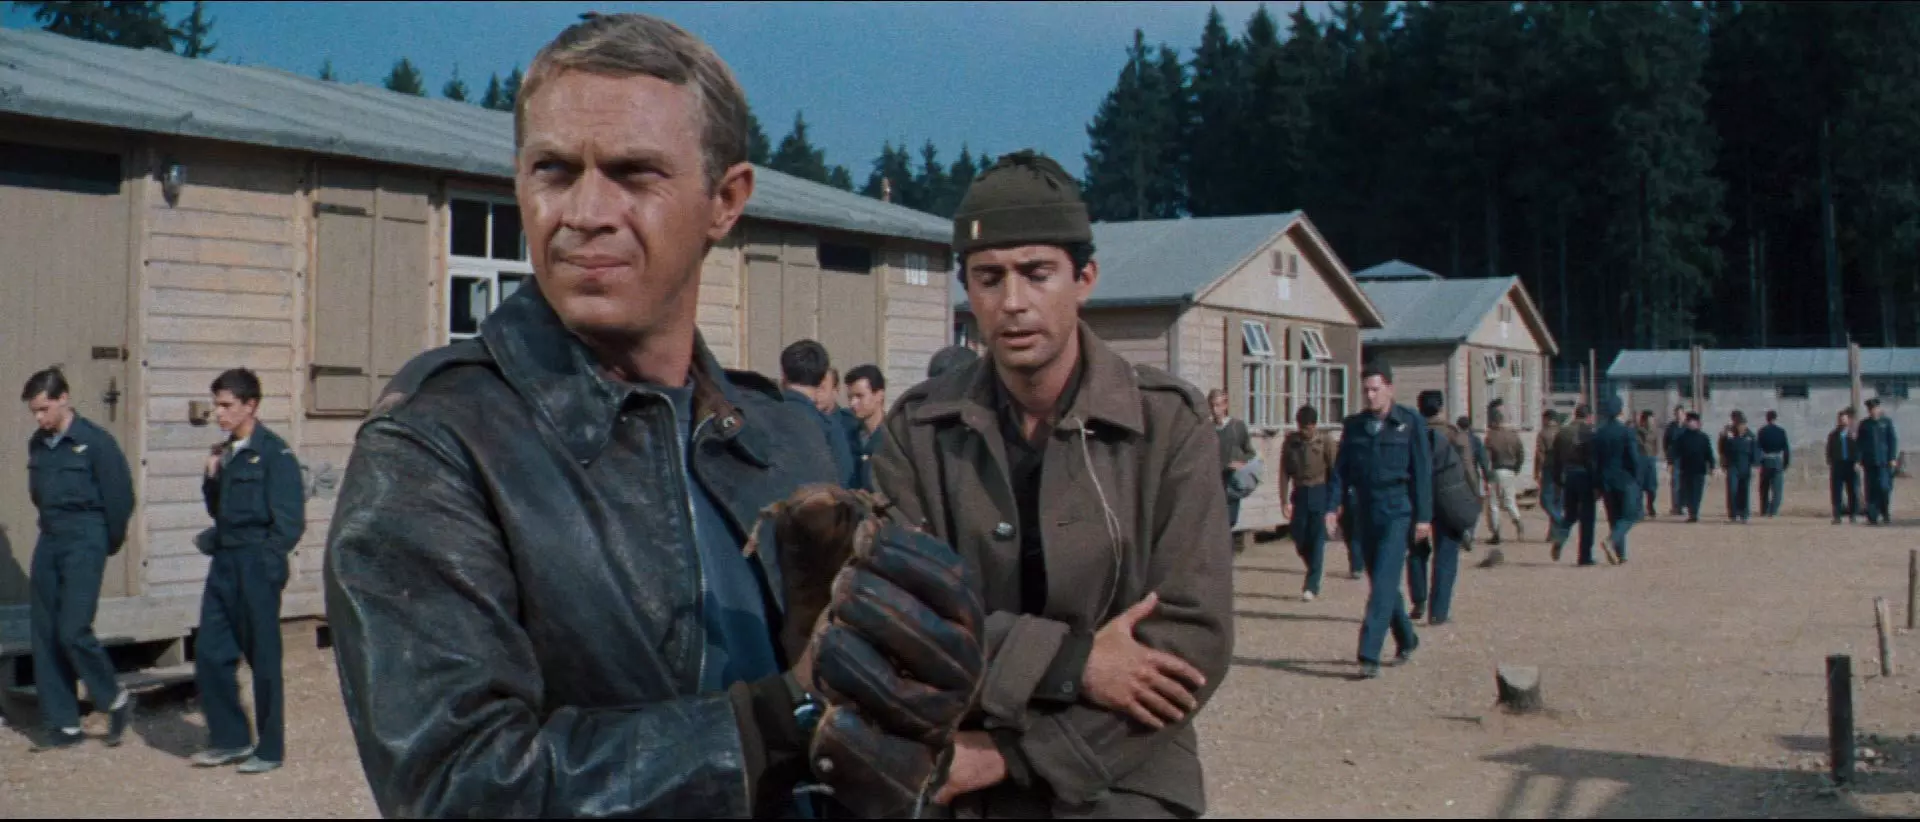 استیو مک کوئین در اردوگاه در فیلم فرار بزرگ